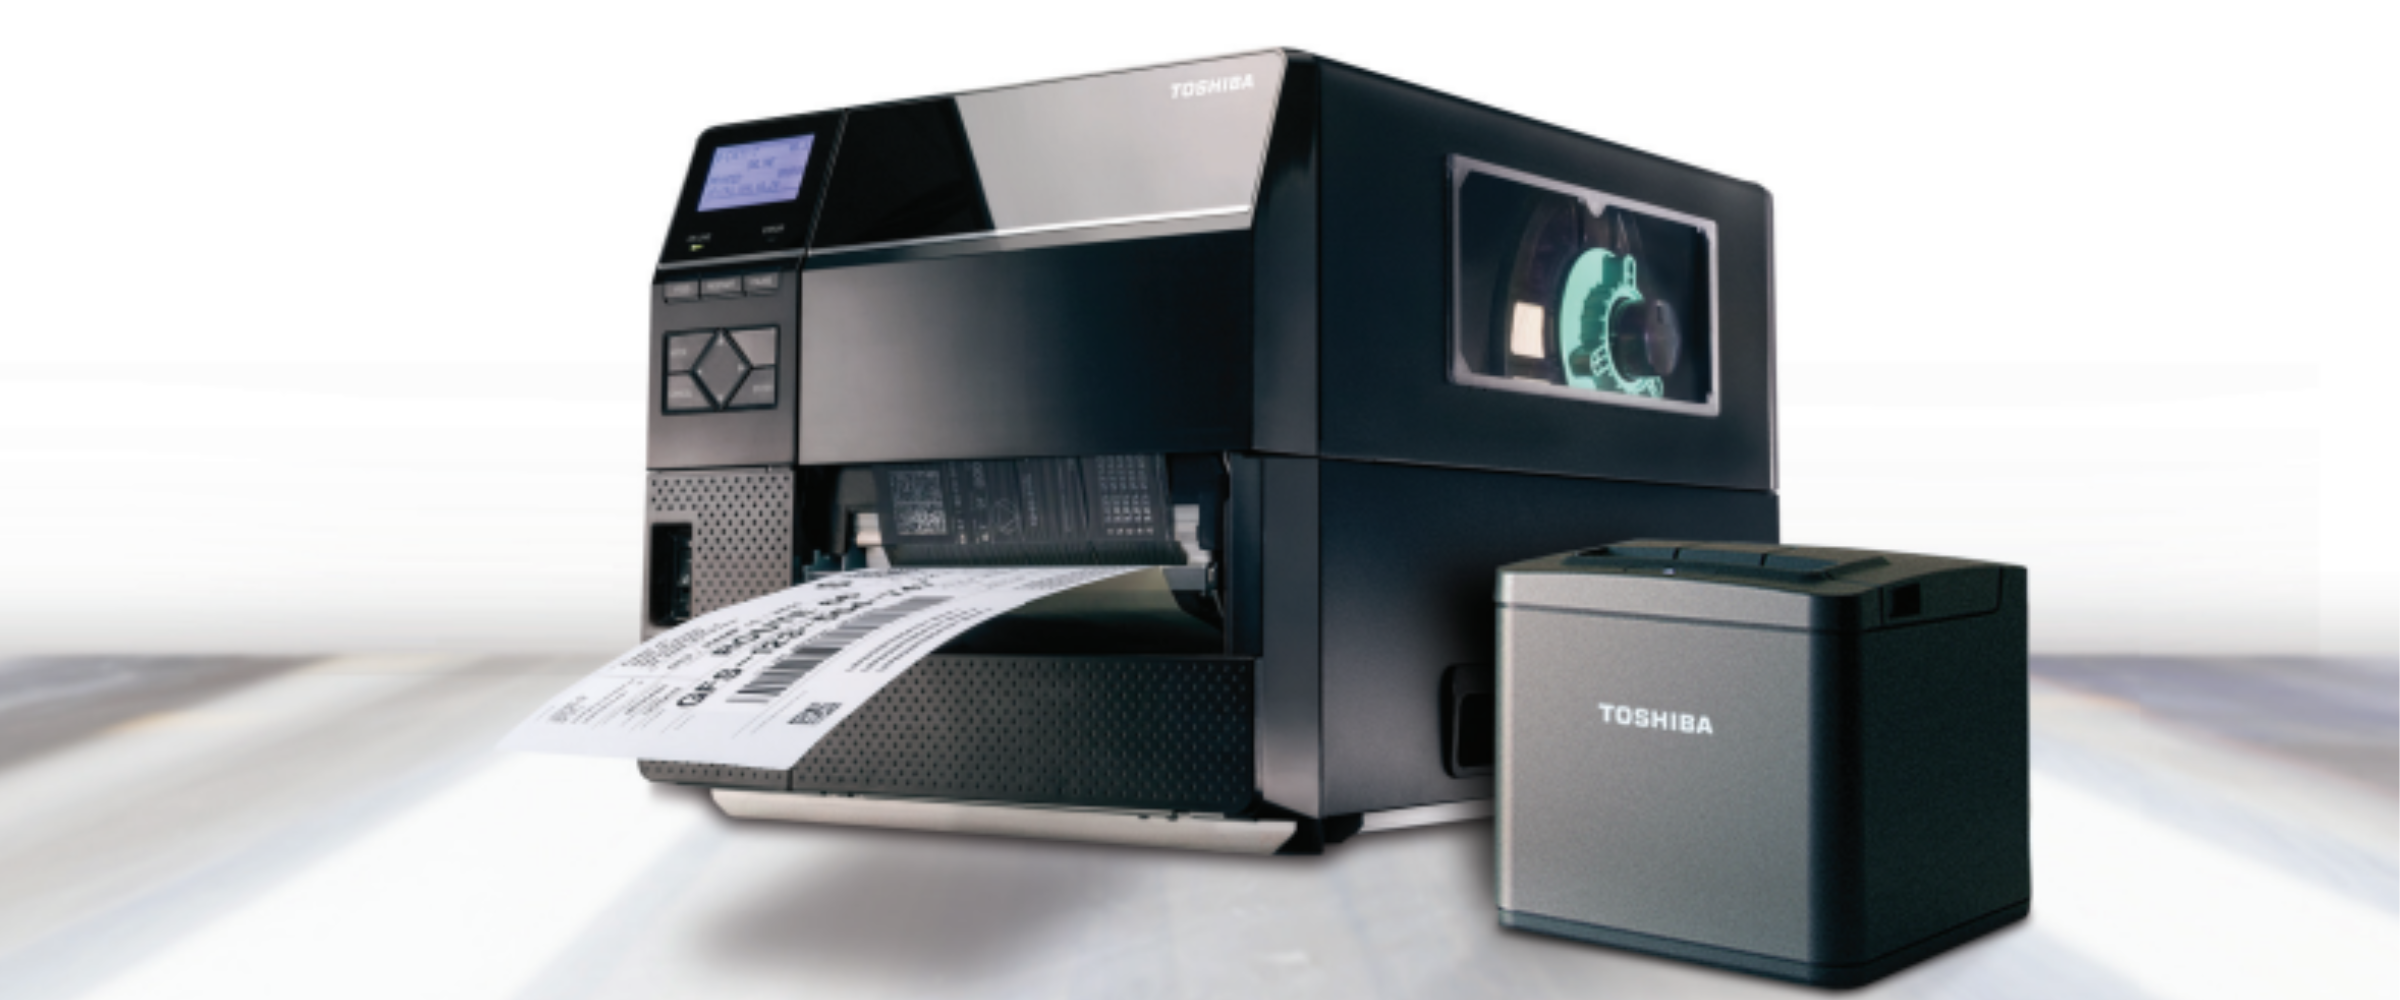 Toshiba Thermal Printer